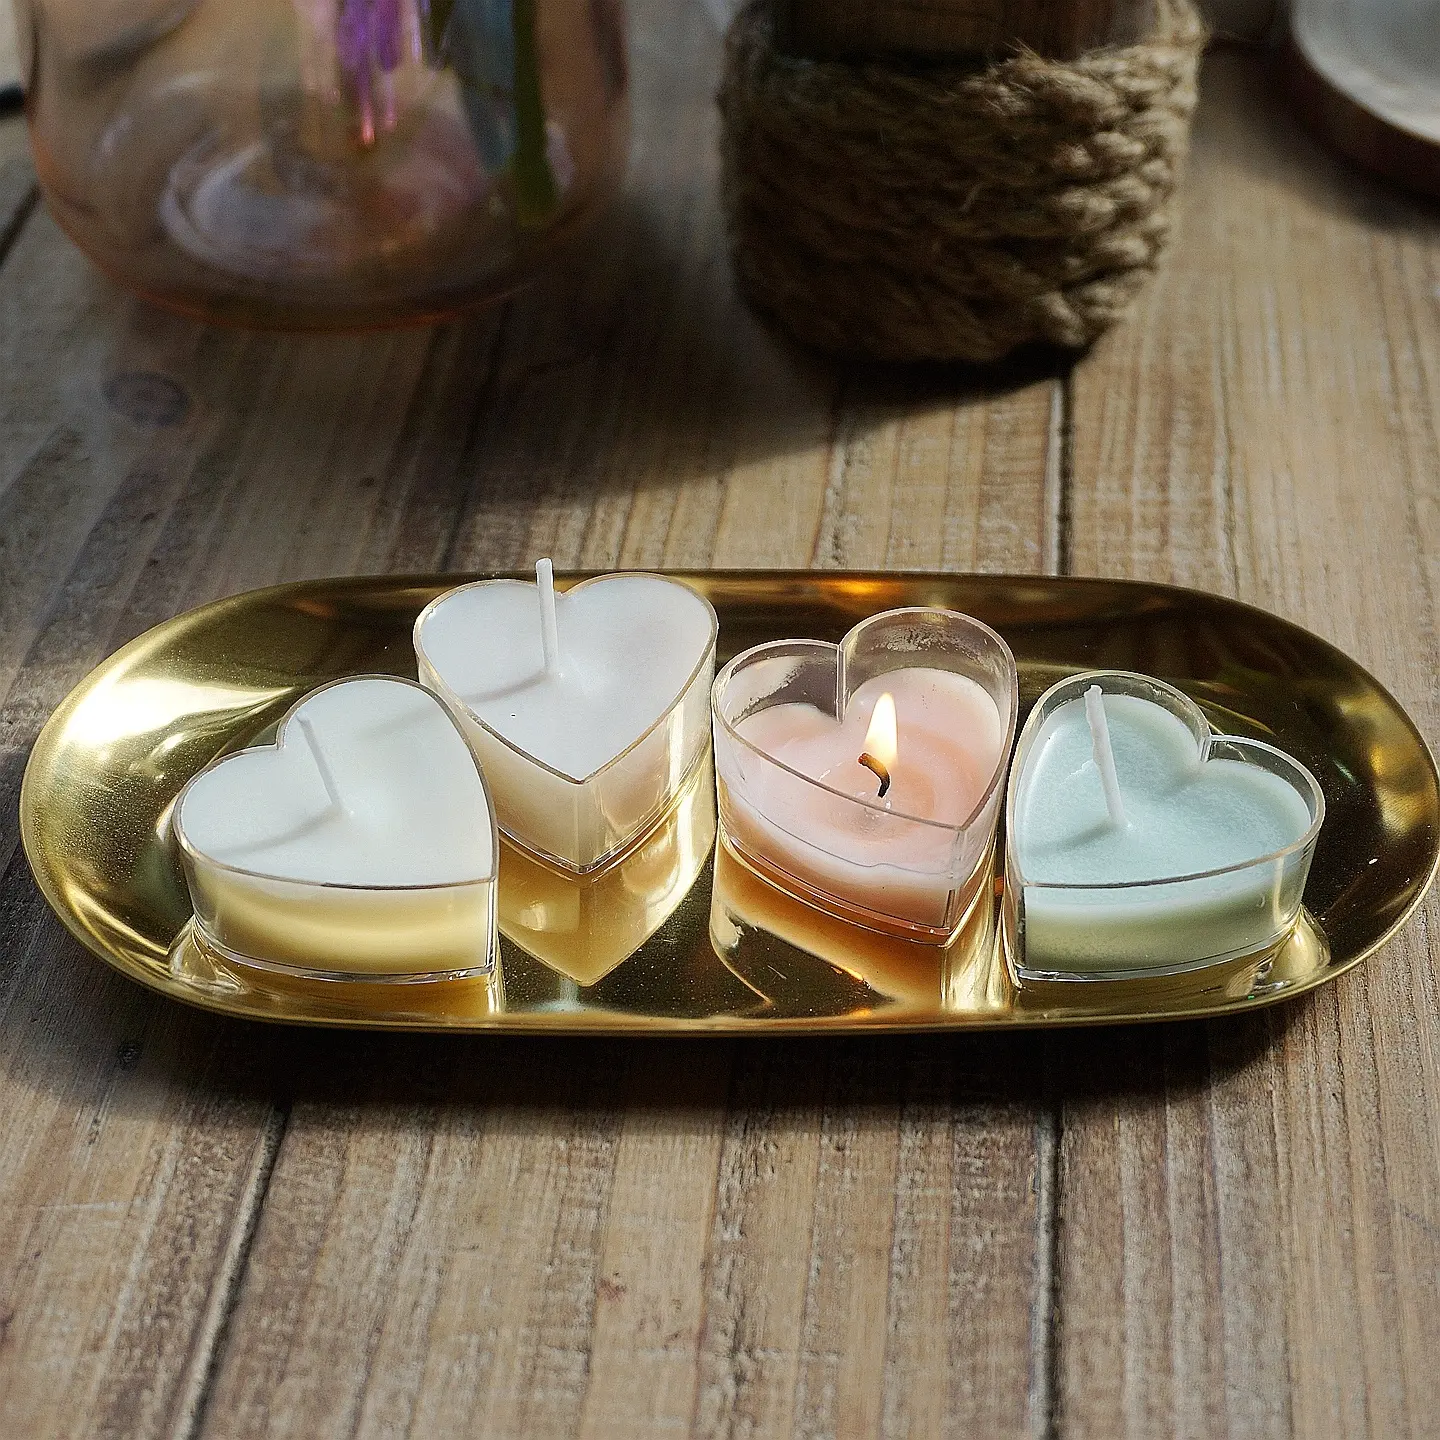 Herzförmige Polycarbonat Tee licht Holde/Tee licht Tassen Kerzen form Gelee Gel Wachs behälter Herstellung Form Handmade Craft Mould